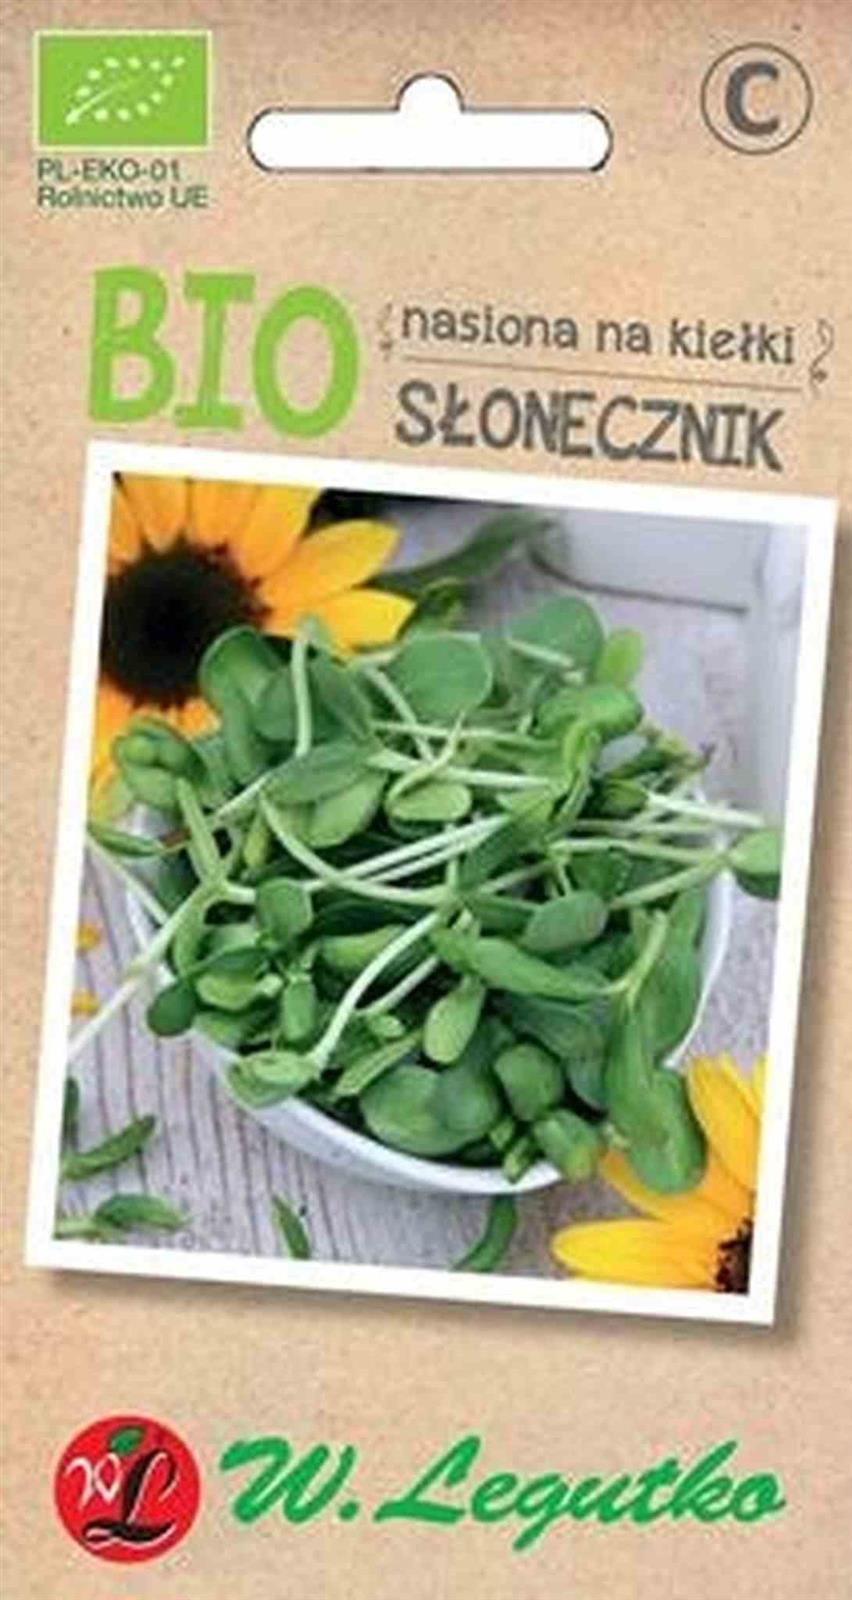 Legutko − Słonecznik, nasiona na kiełki BIO − 10 g